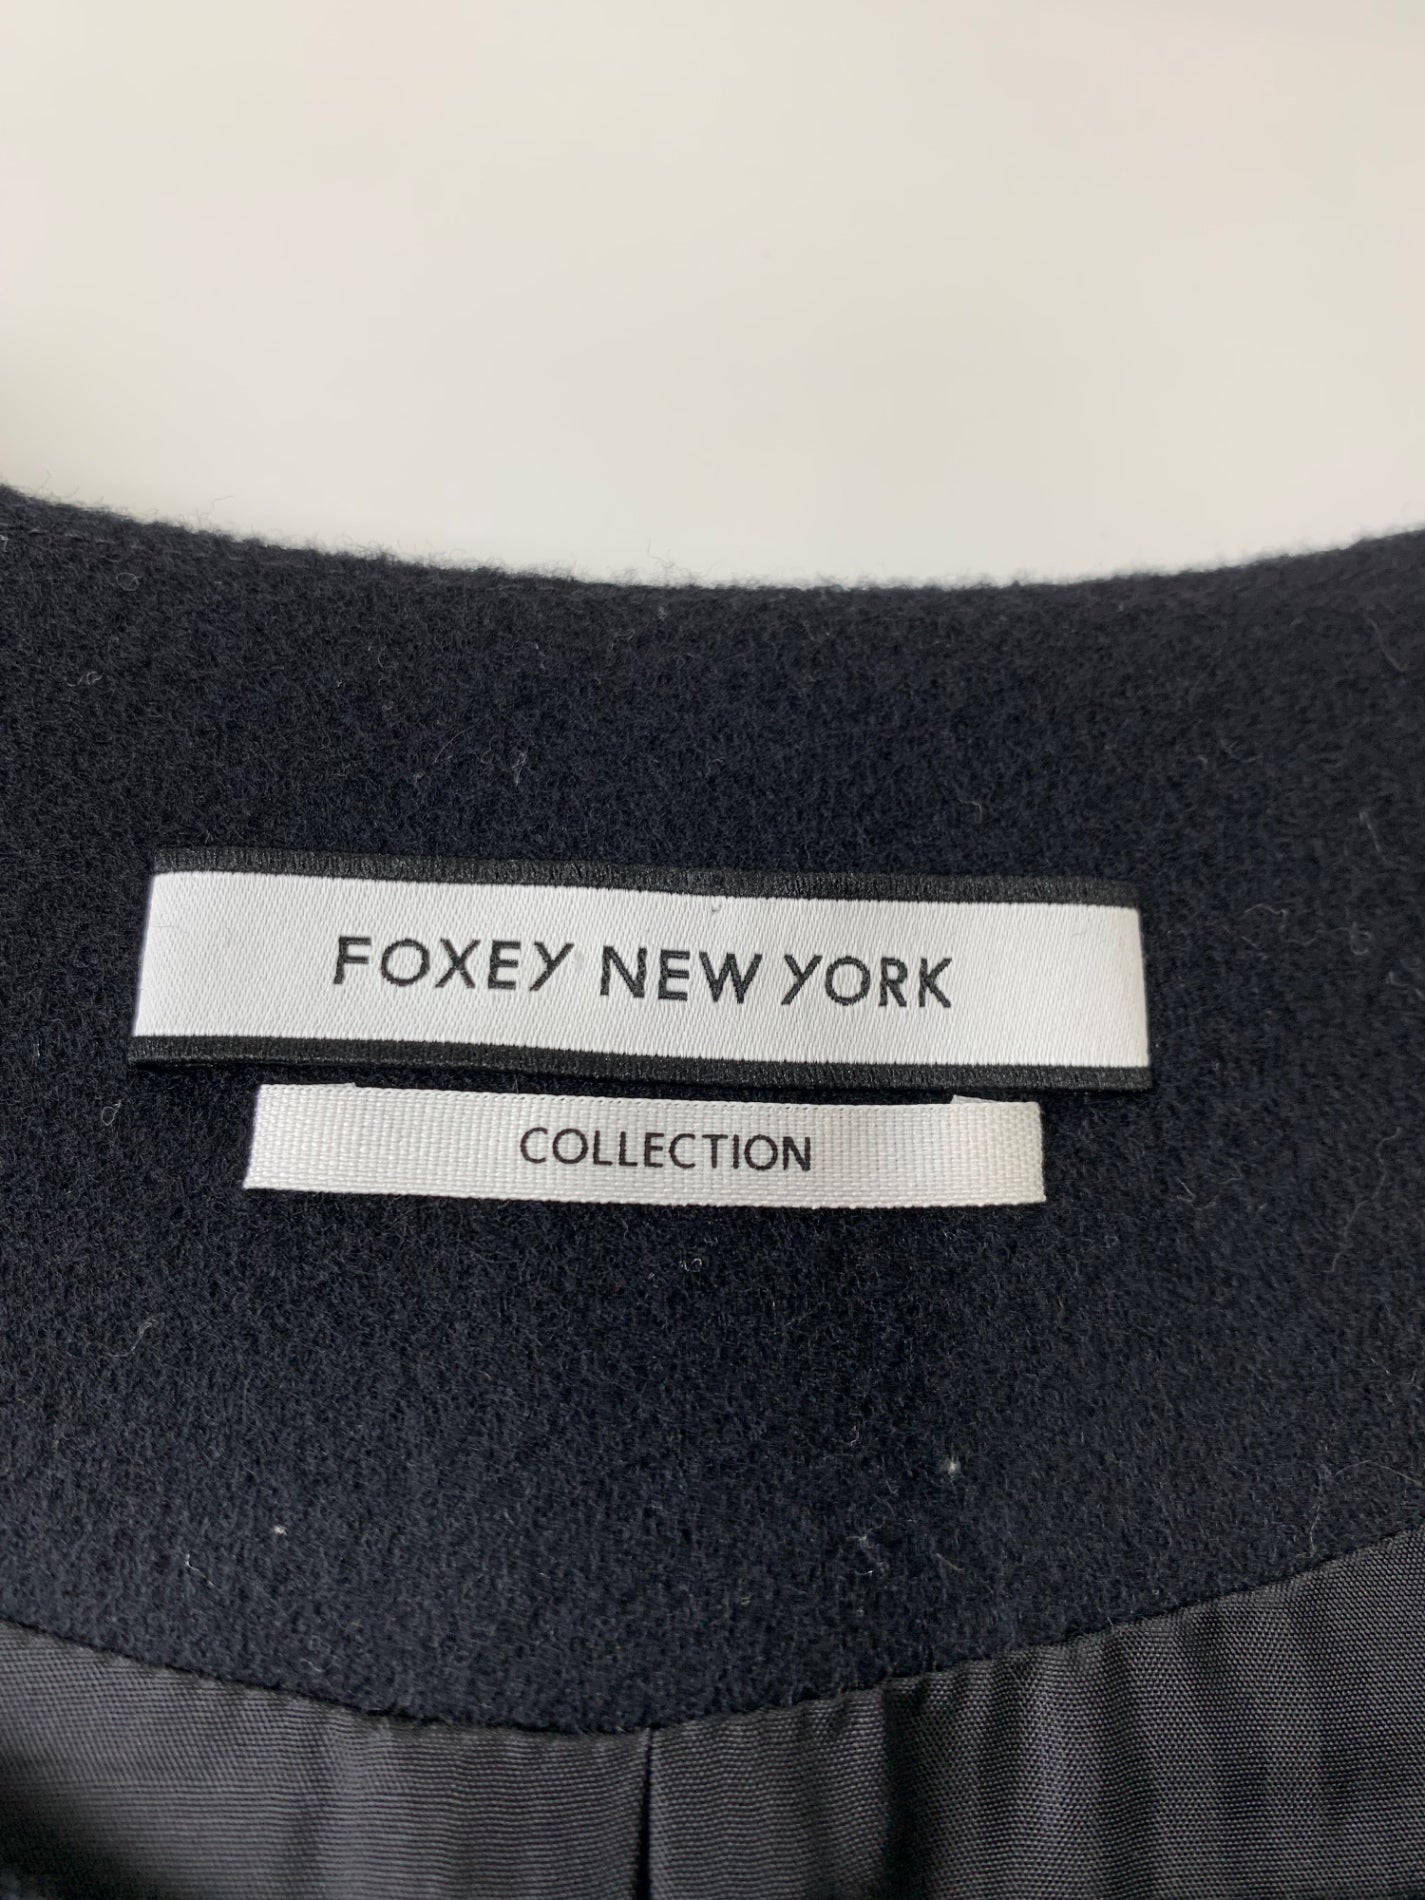 フォクシーニューヨーク collection Coat 36199 ベスト コート F ブラック ITWIUM8V9RS8